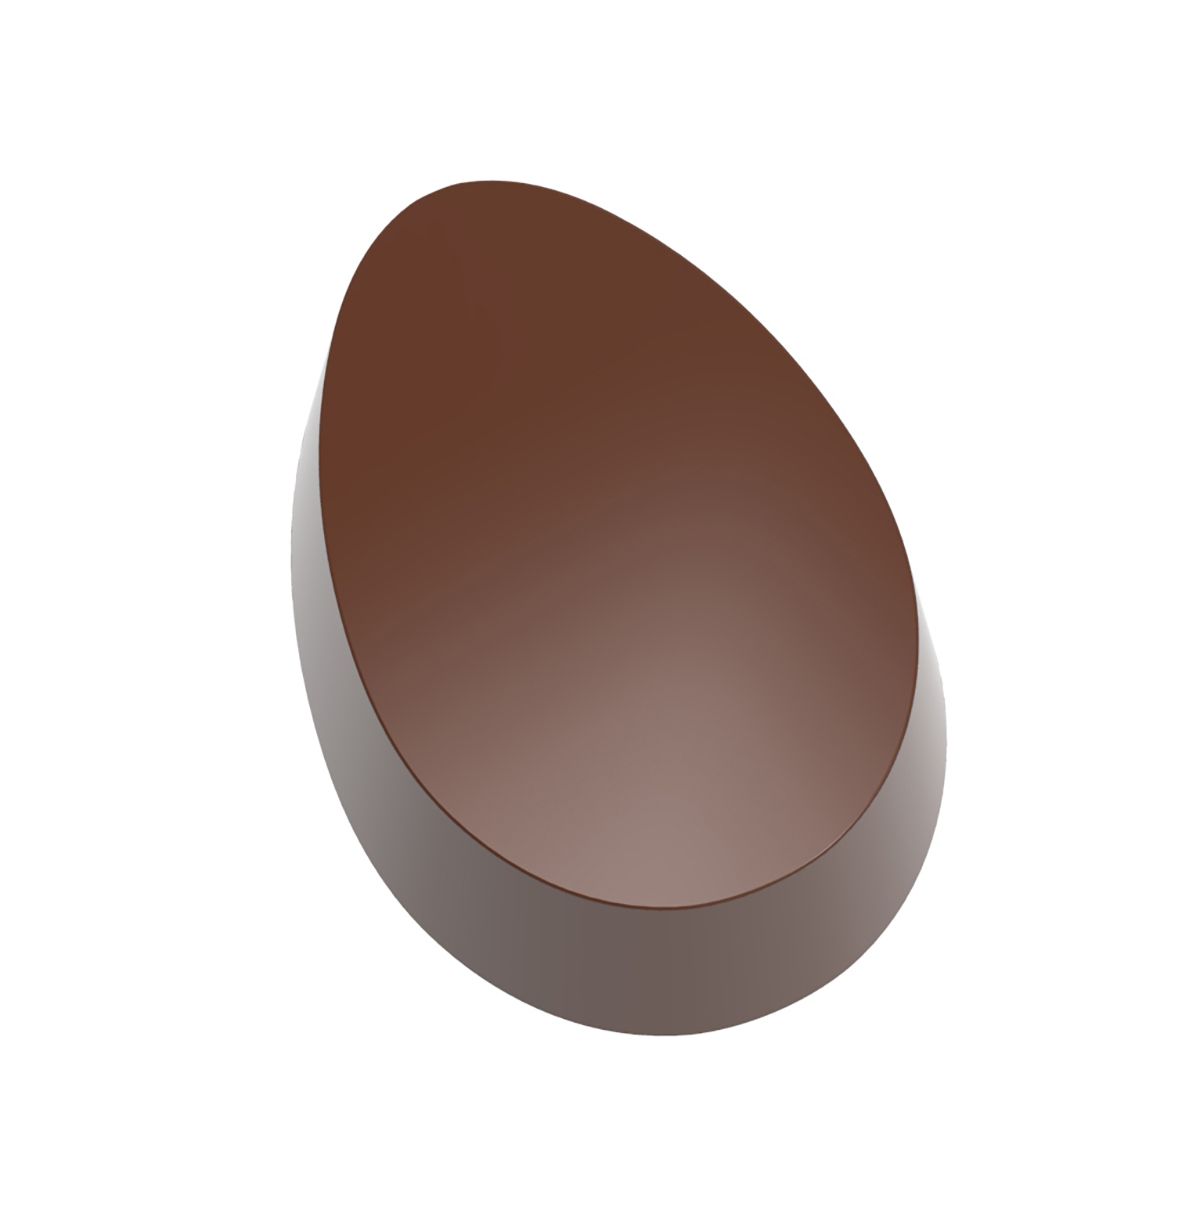 Se Professionel chokoladeform i Magnet polycarbonat - Fladt Æg CW1000L44 hos BageTid.dk